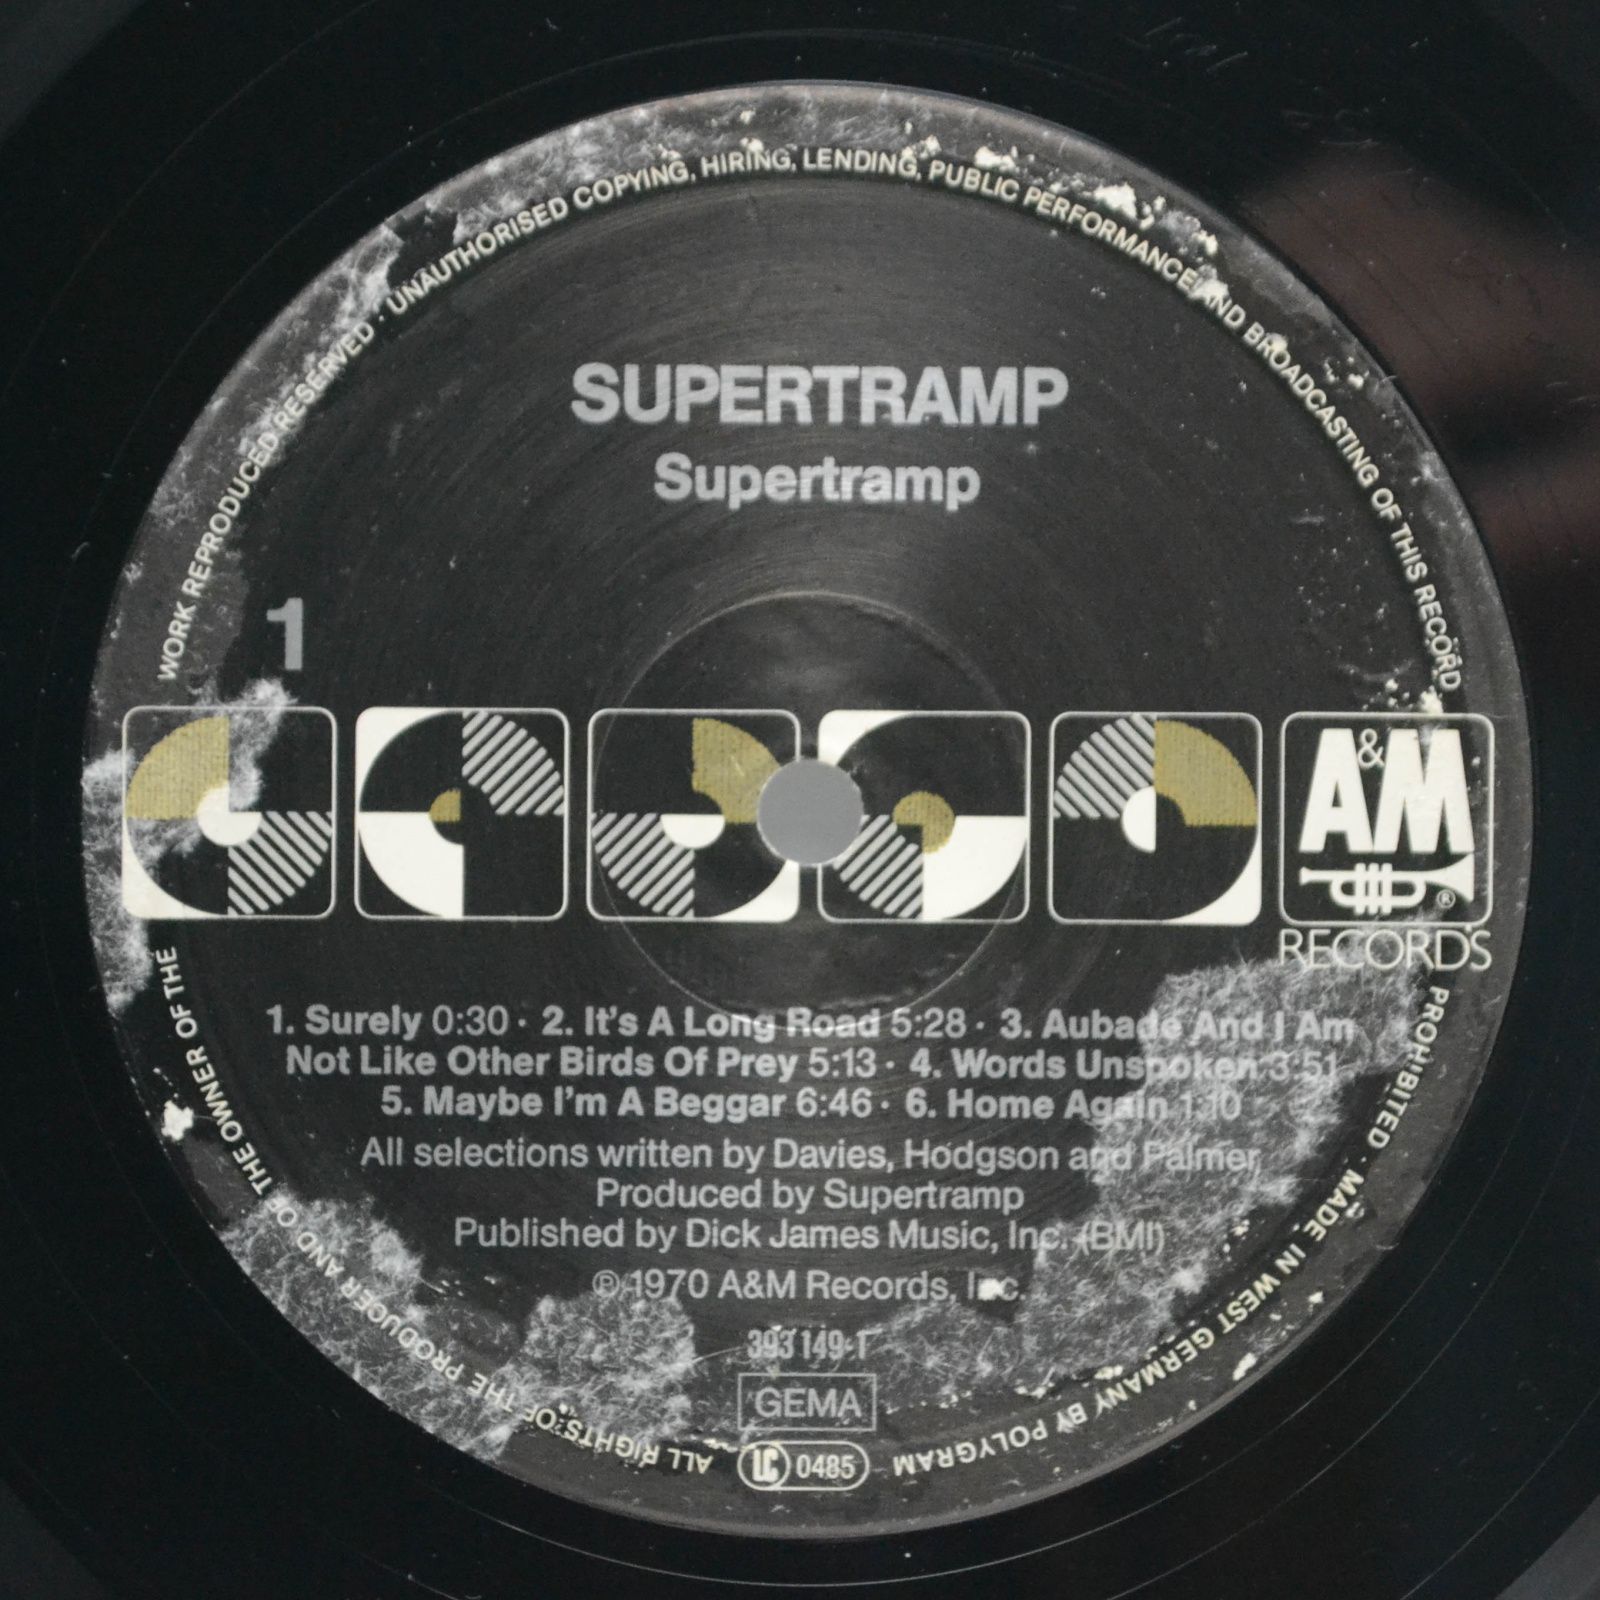 Supertramp — Supertramp, 1970